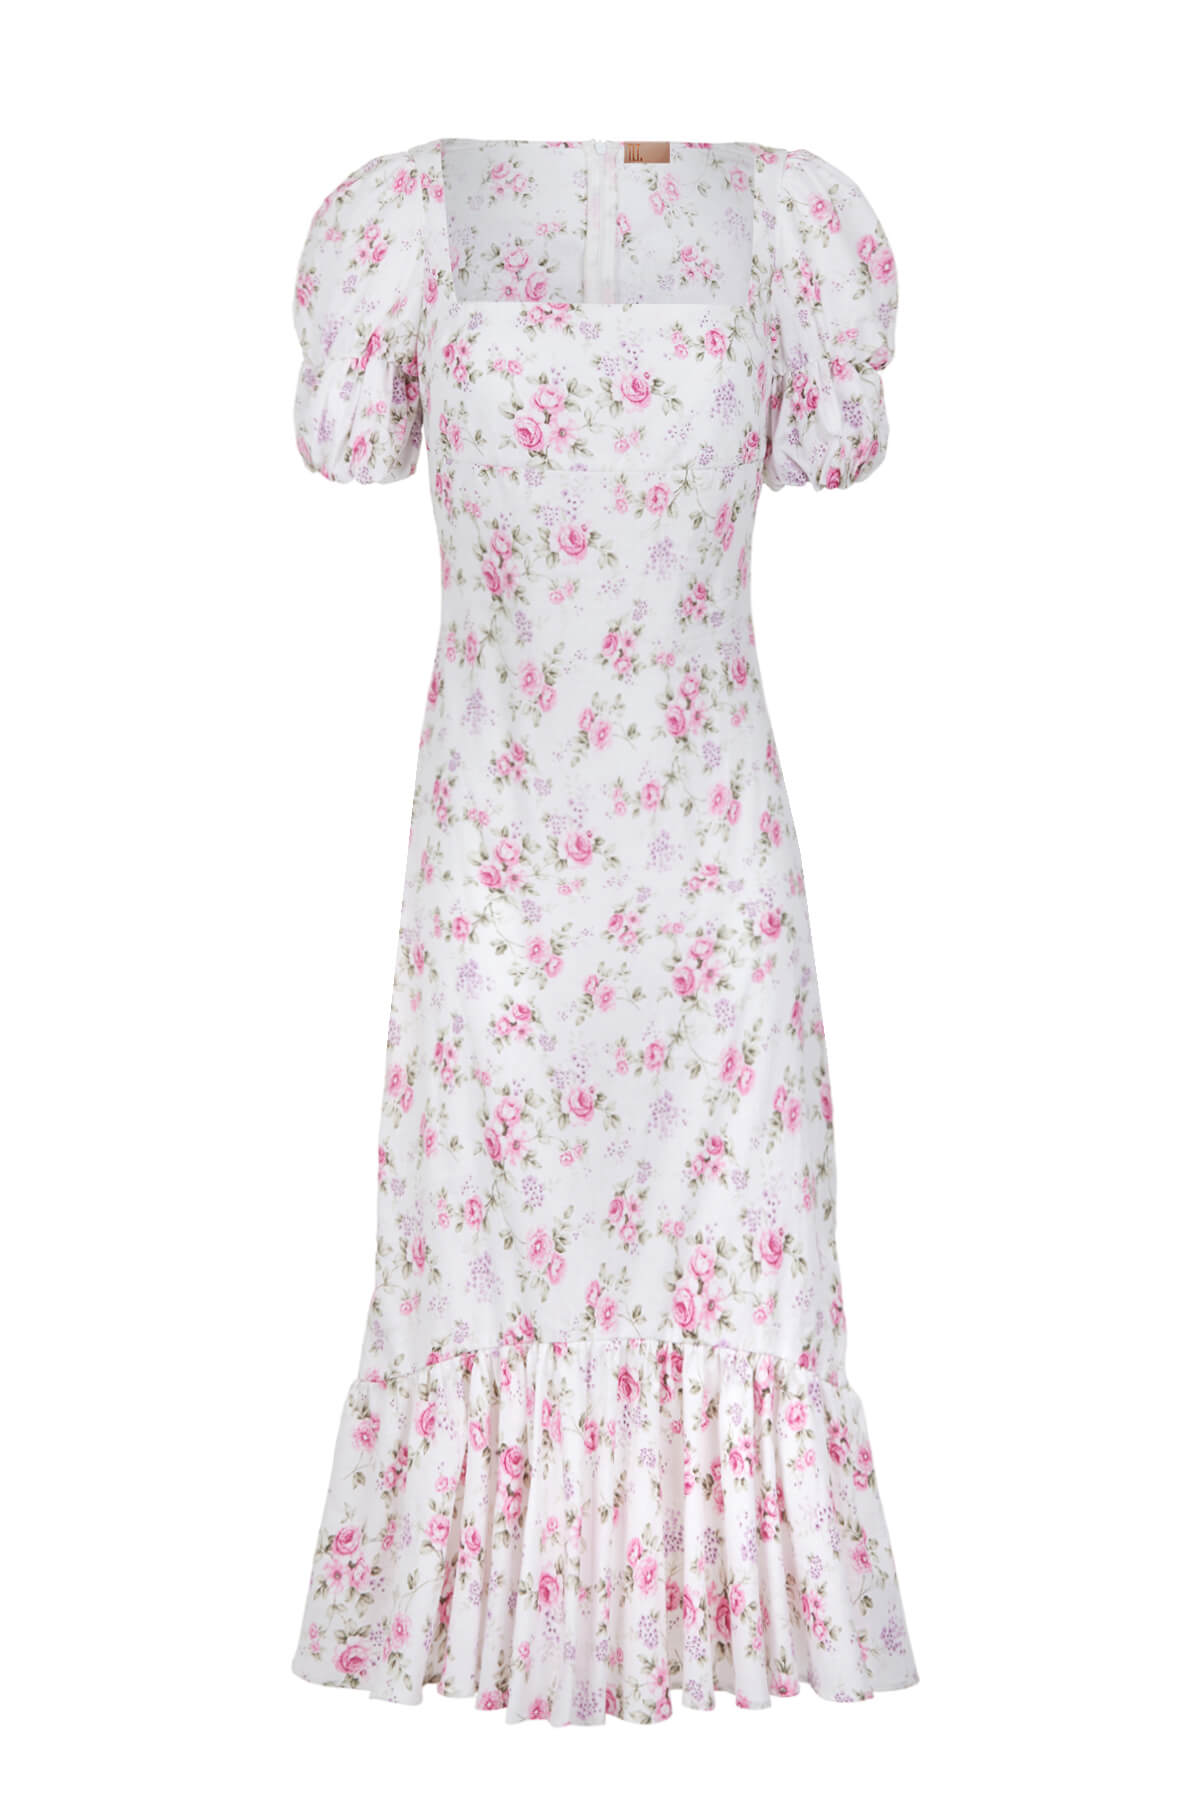 JASMINE Floral Midi Poplin Pink Dress